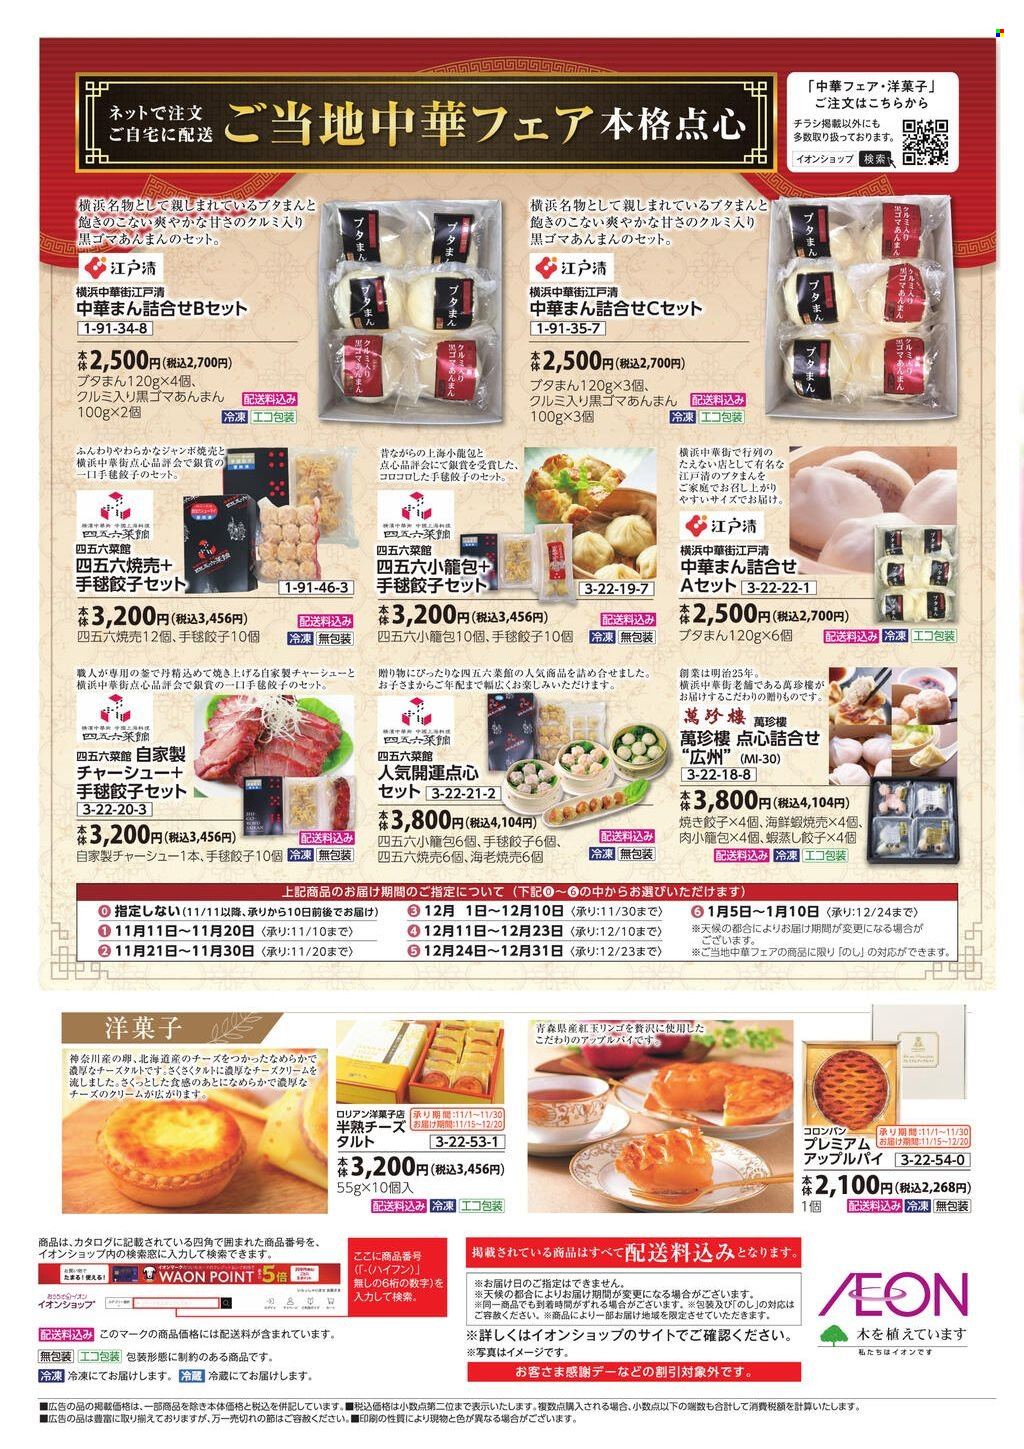 thumbnail - イオンチラシ - セール製品 - きのこ, 米, 餃子。ページ2。